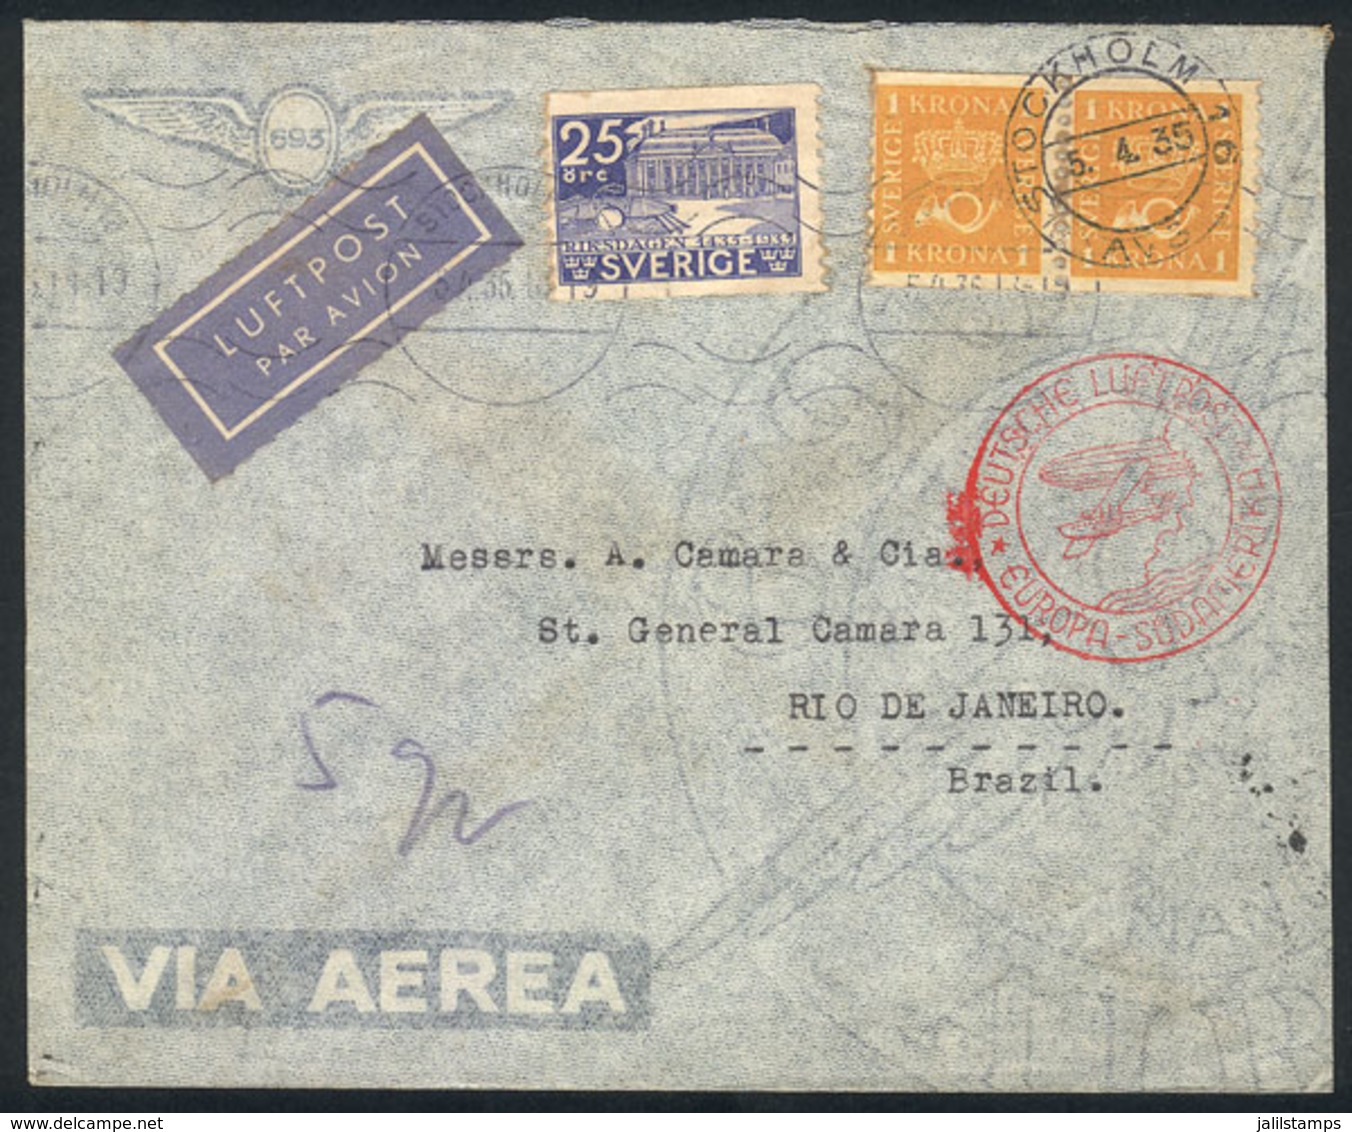 SWEDEN: 5/AP/1935 Stockholm - Rio De Janeiro: Airmail Cover Sent Via Germany (DLH), VF Quality! - Storia Postale